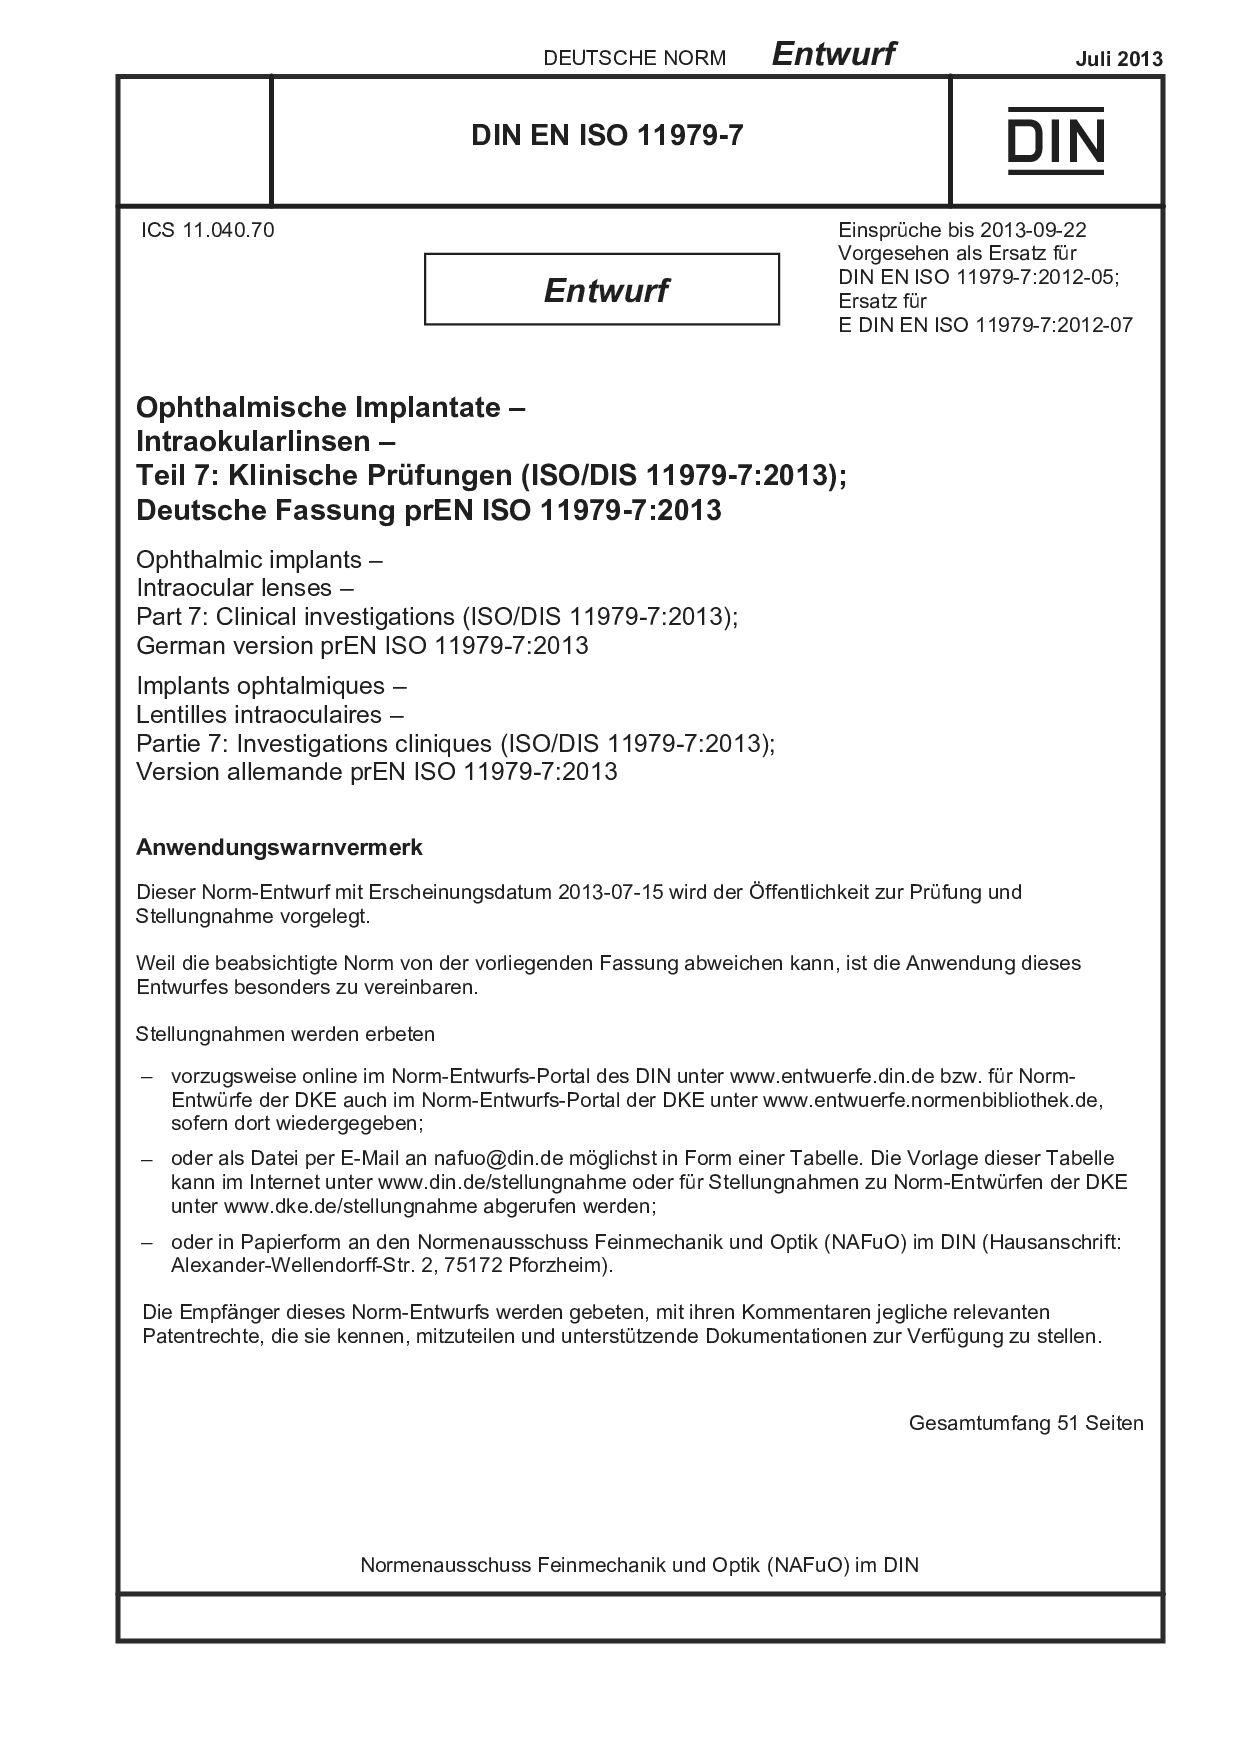 DIN EN ISO 11979-7 E:2013-07封面图